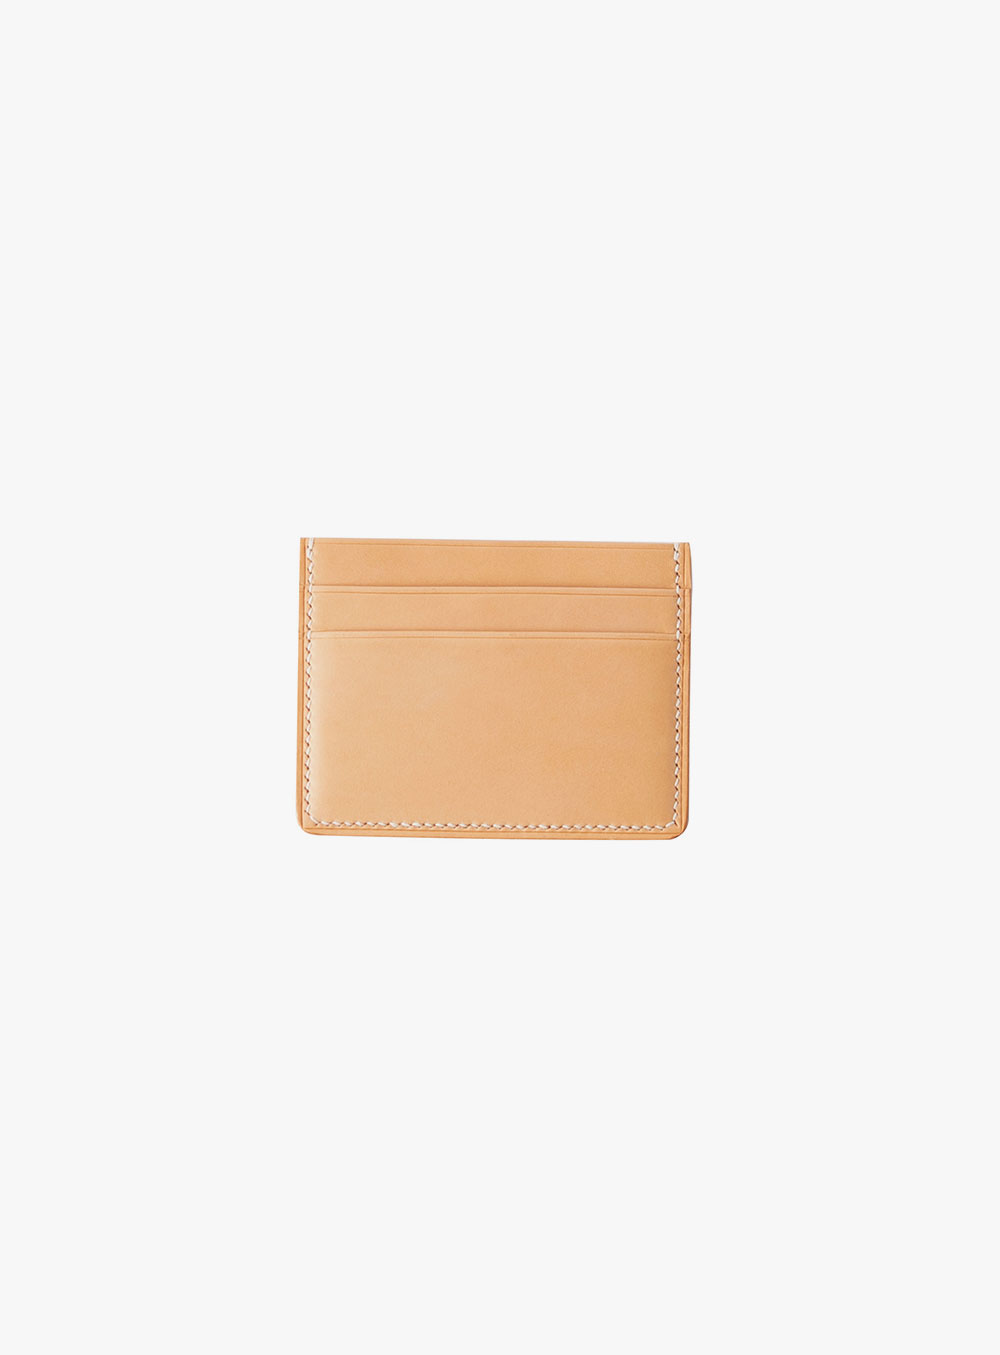 오디너리굿즈 - OG wallet01 - natural